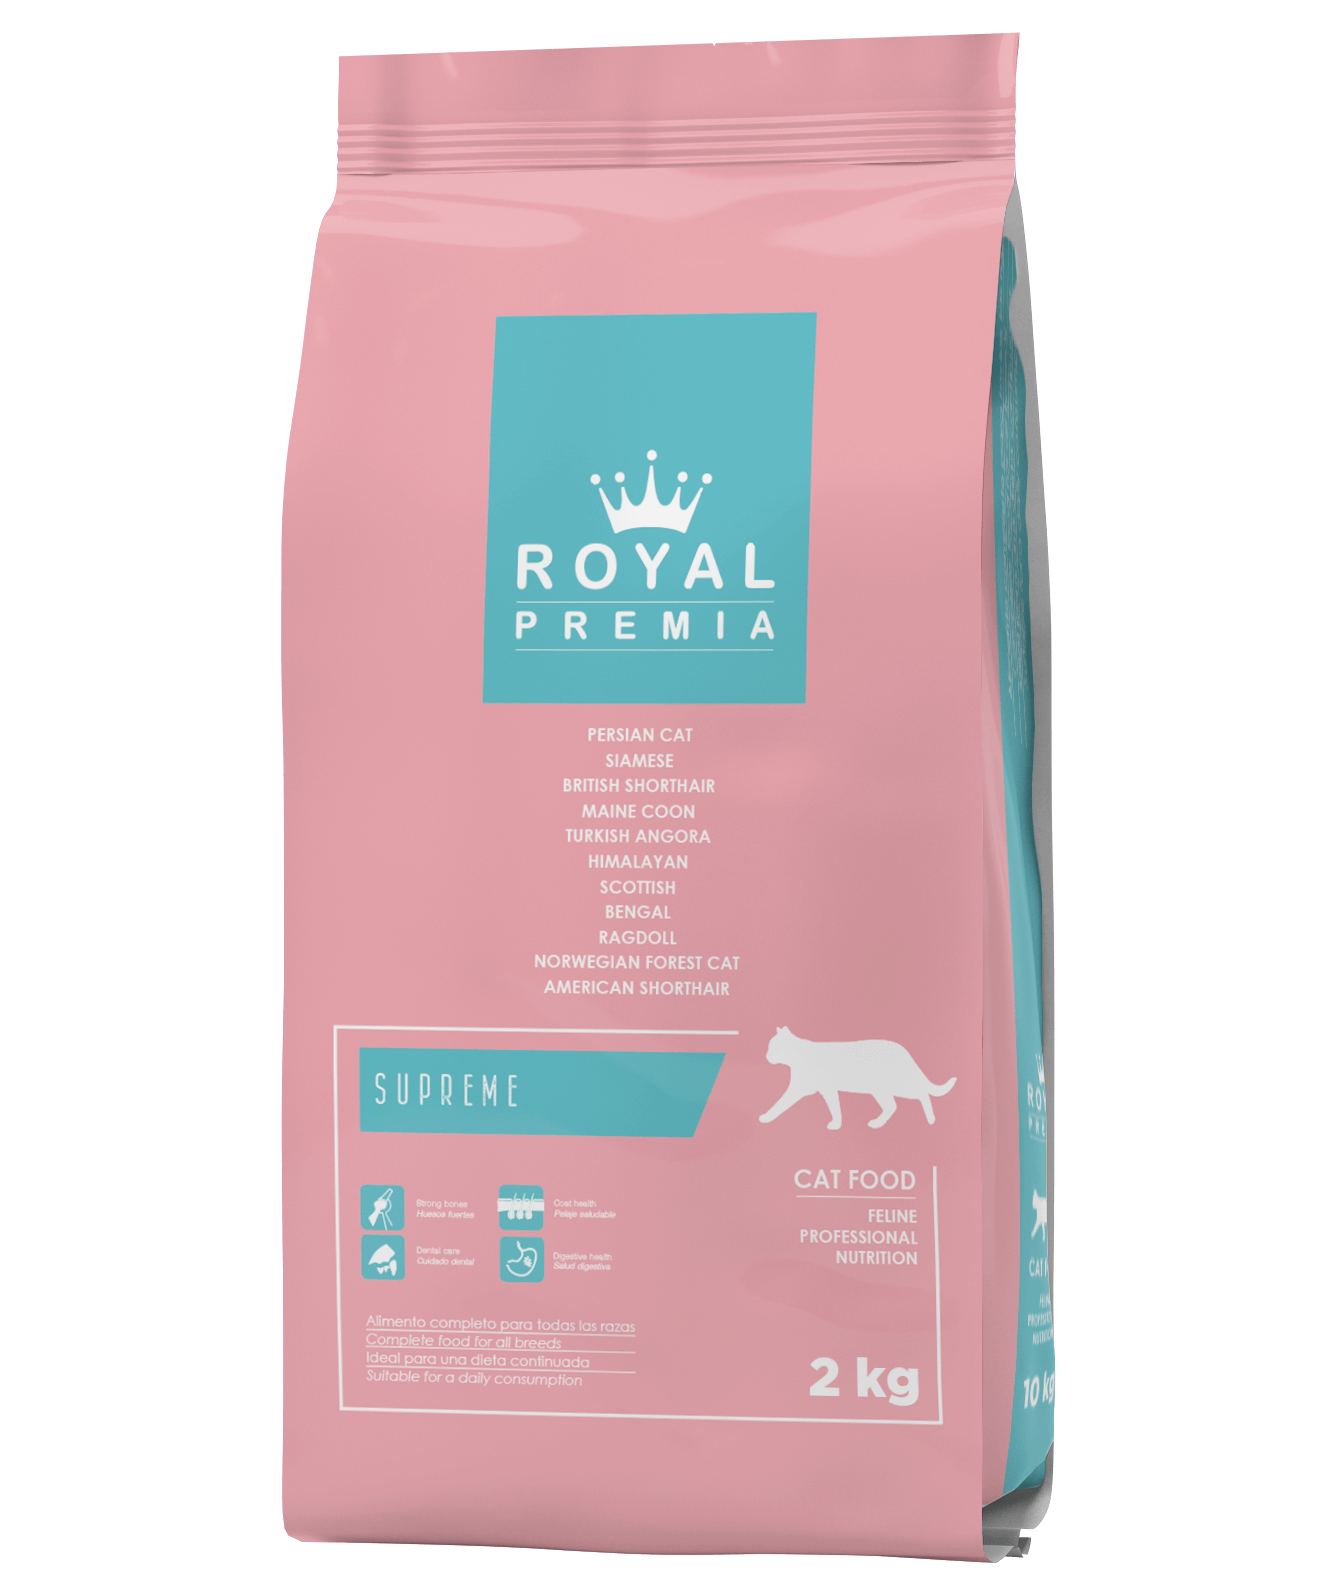 Royal Premia Dry Cat food and Kitten Food 2kg in Sharjah, Dubai